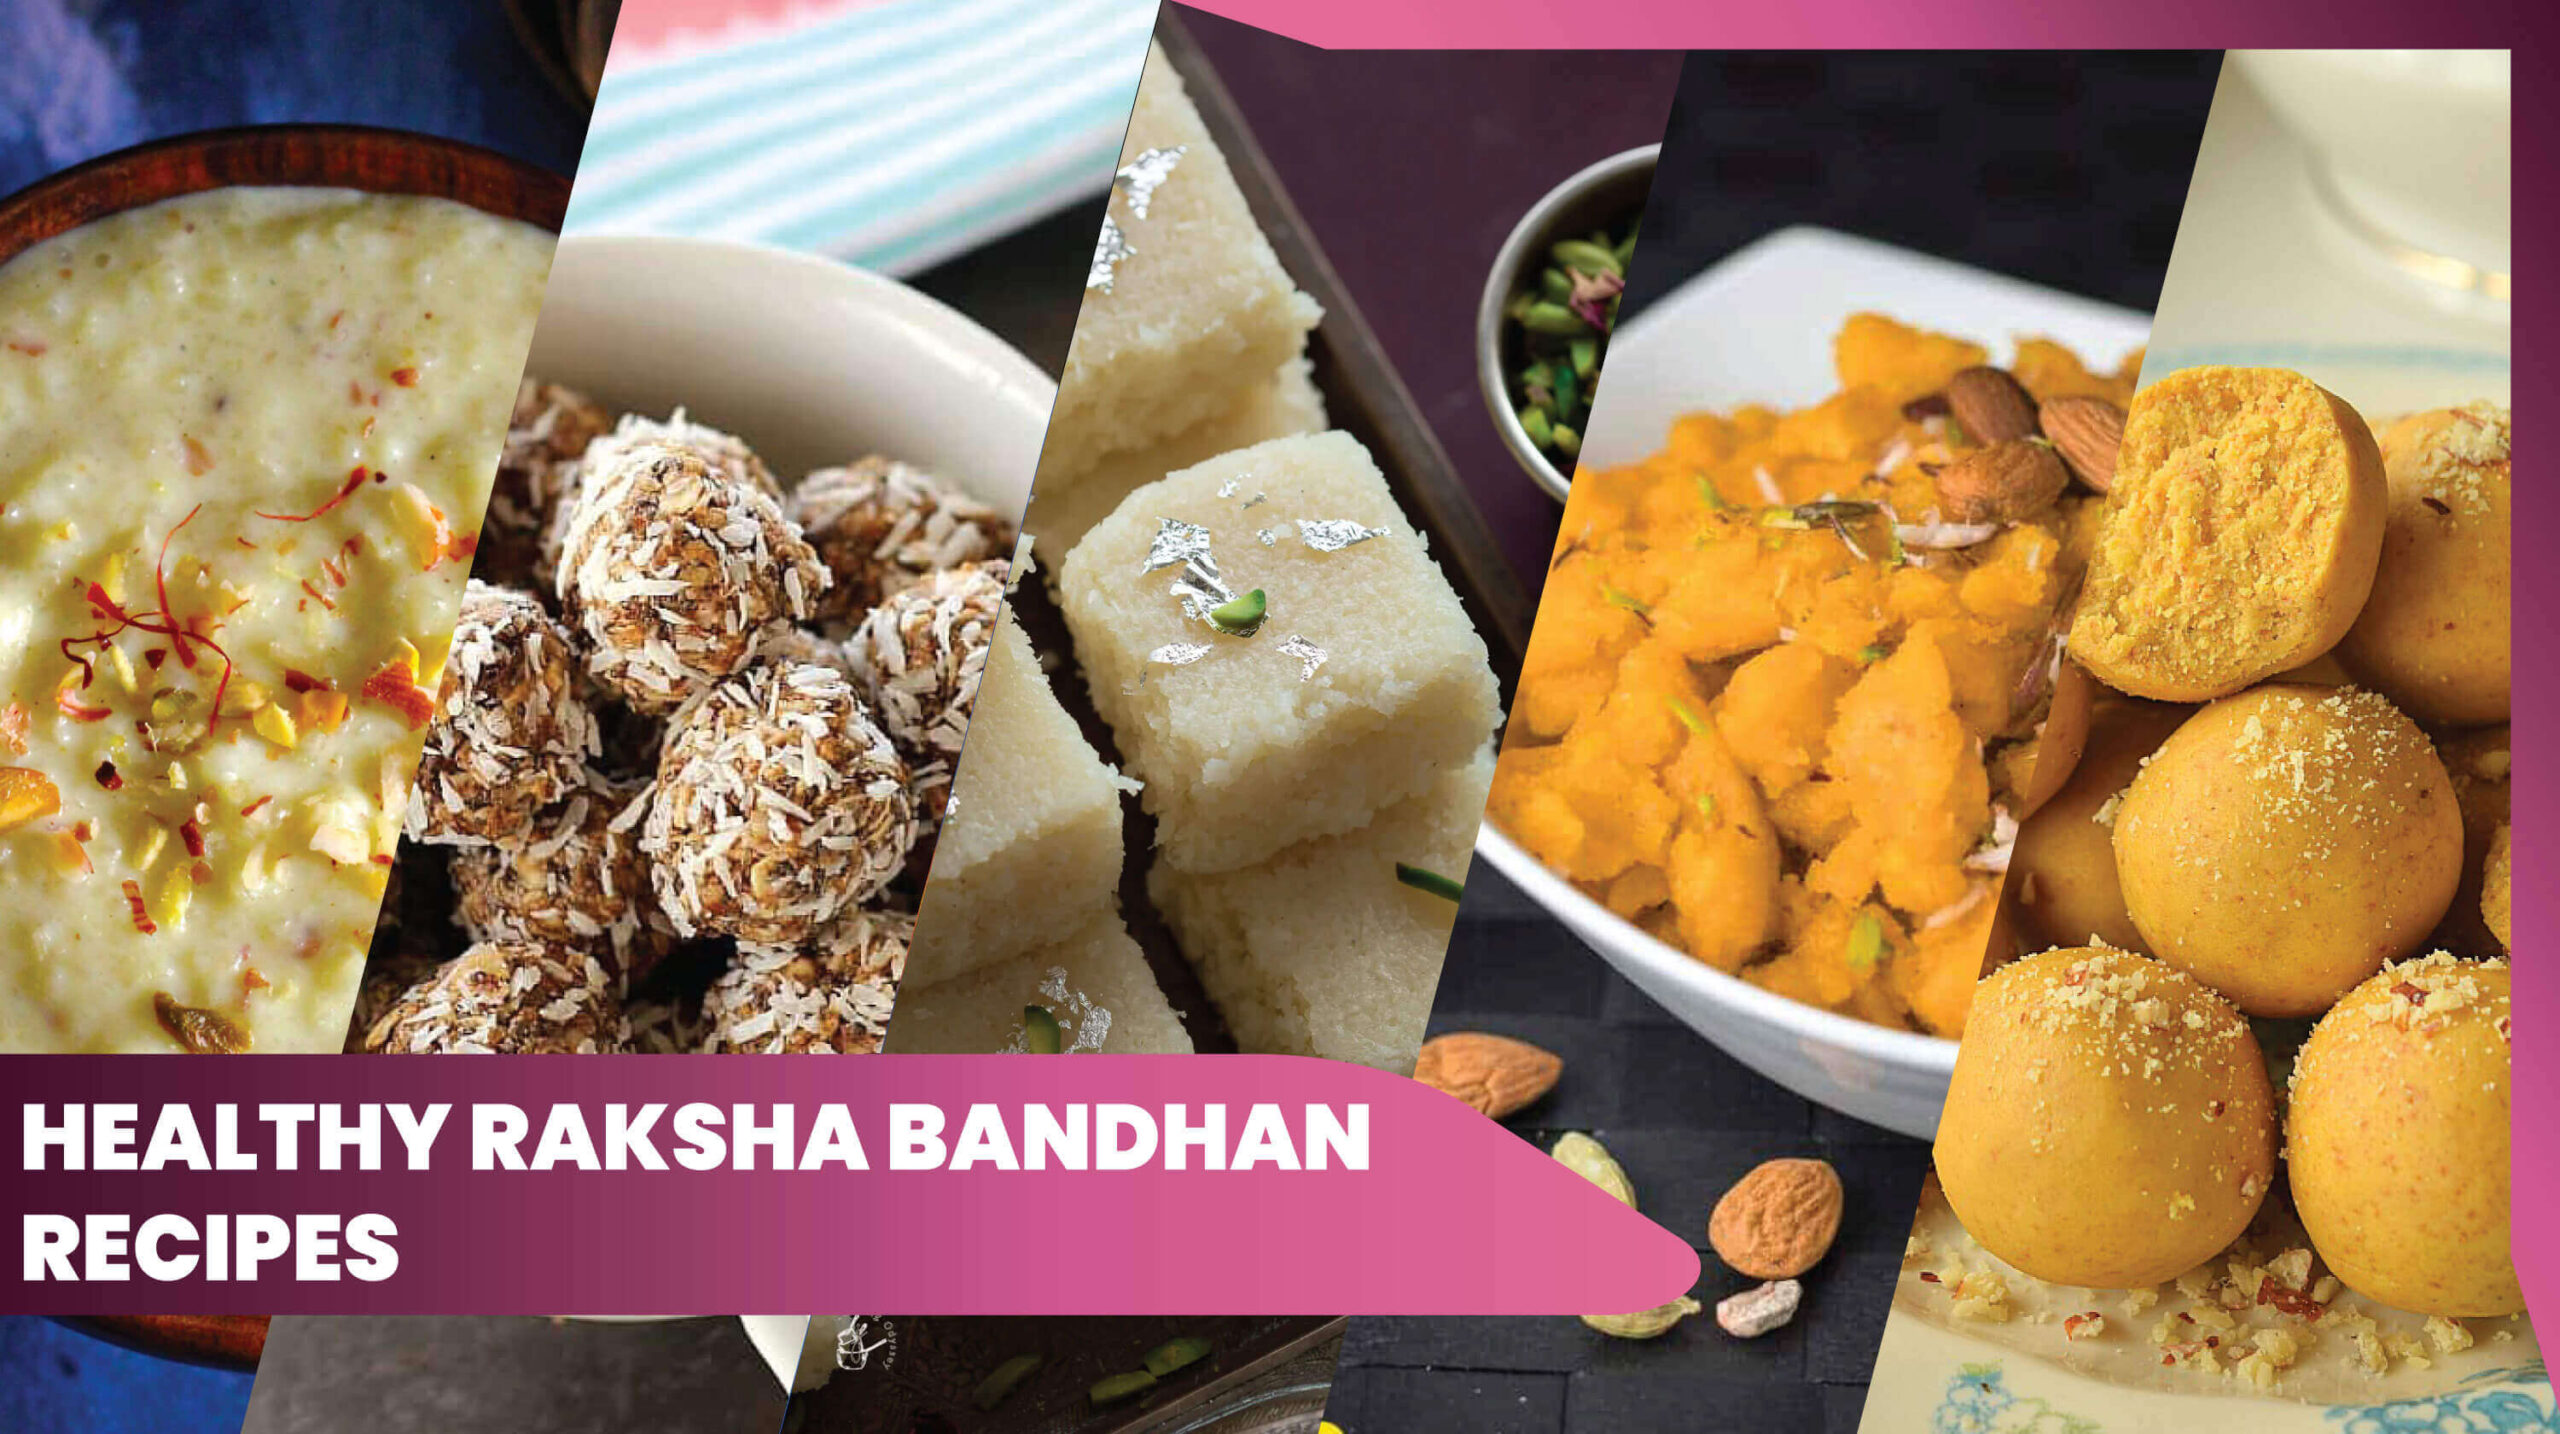 11healthy raksha bandhan recipes with low sugar and affordable